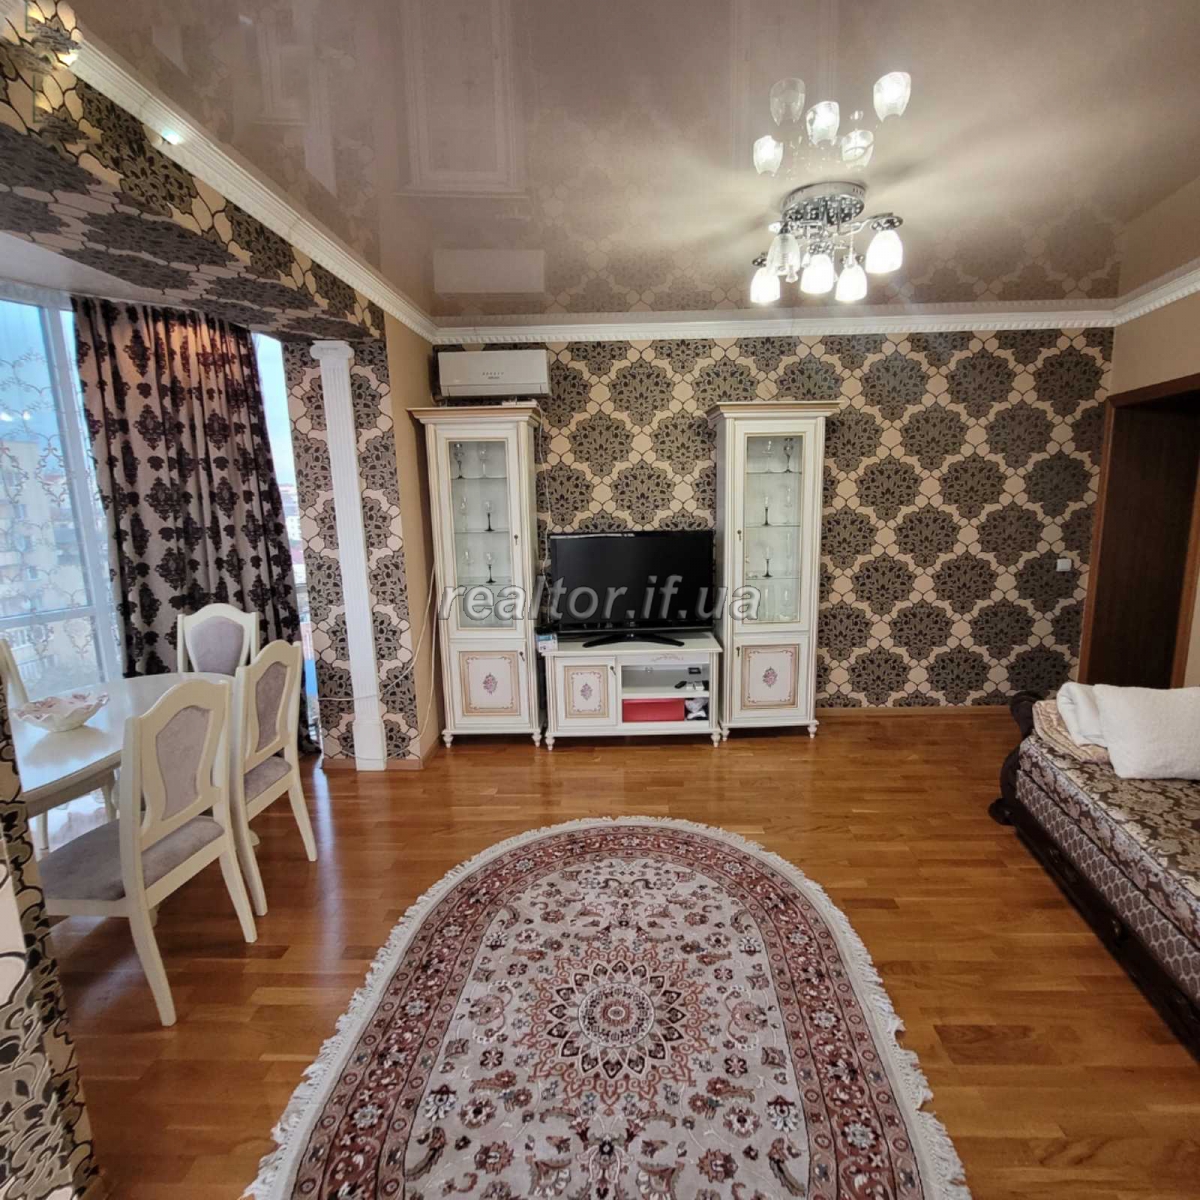 Продается 2 комнатная квартира по улице Тычины.